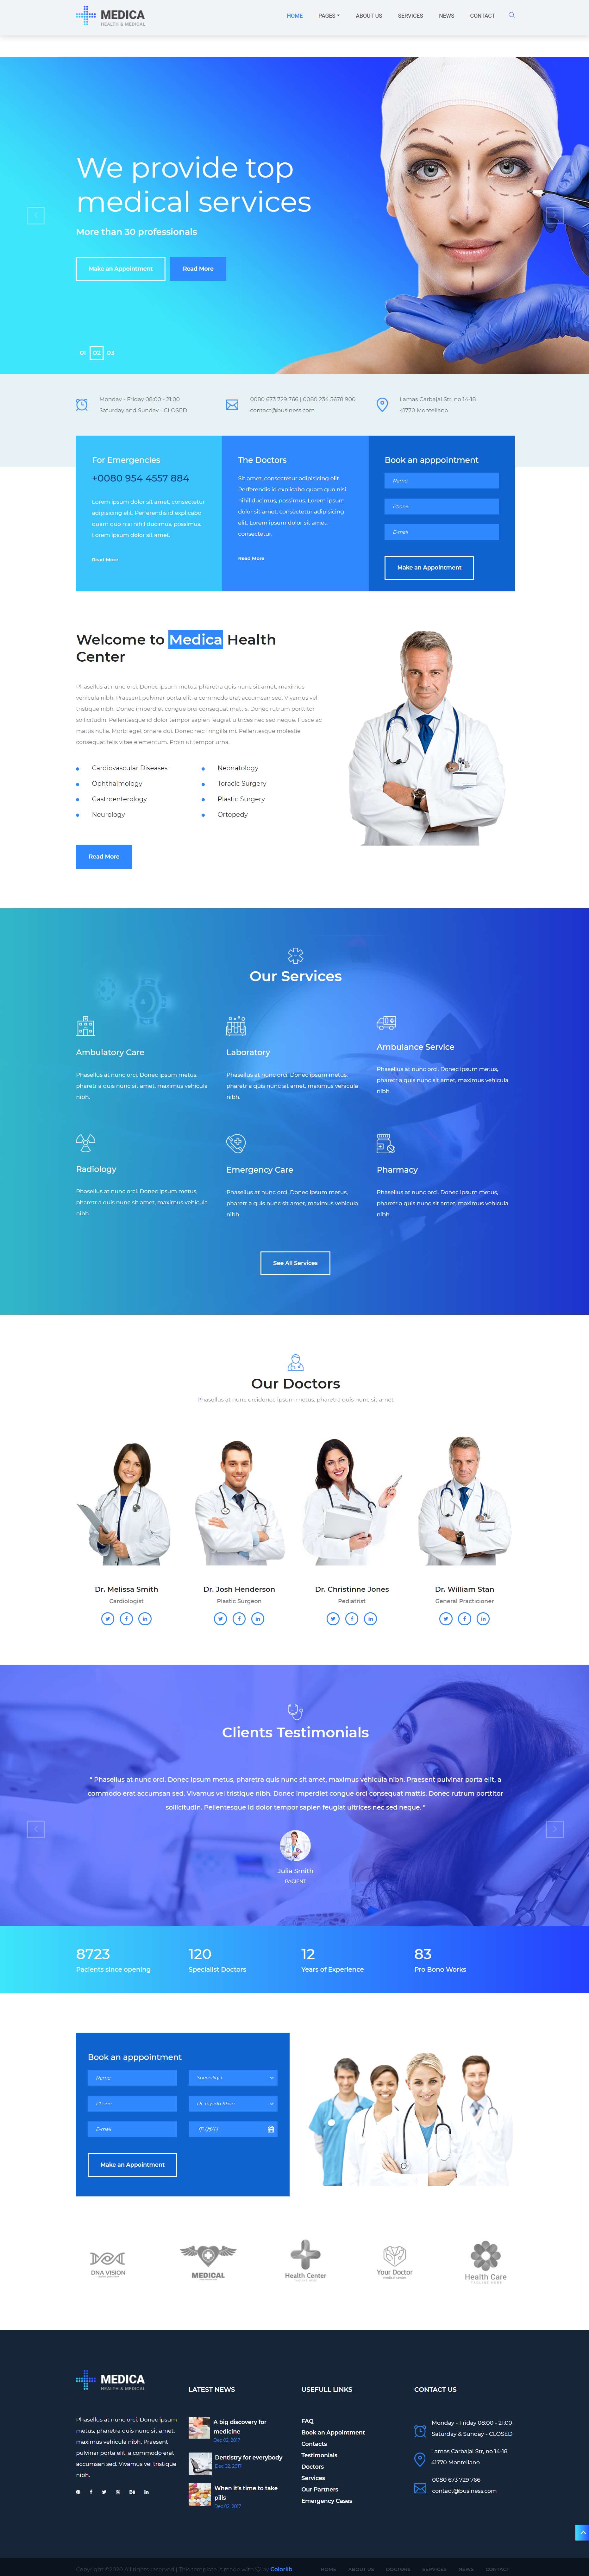 蓝色简洁风格响应式整形医疗网页模板